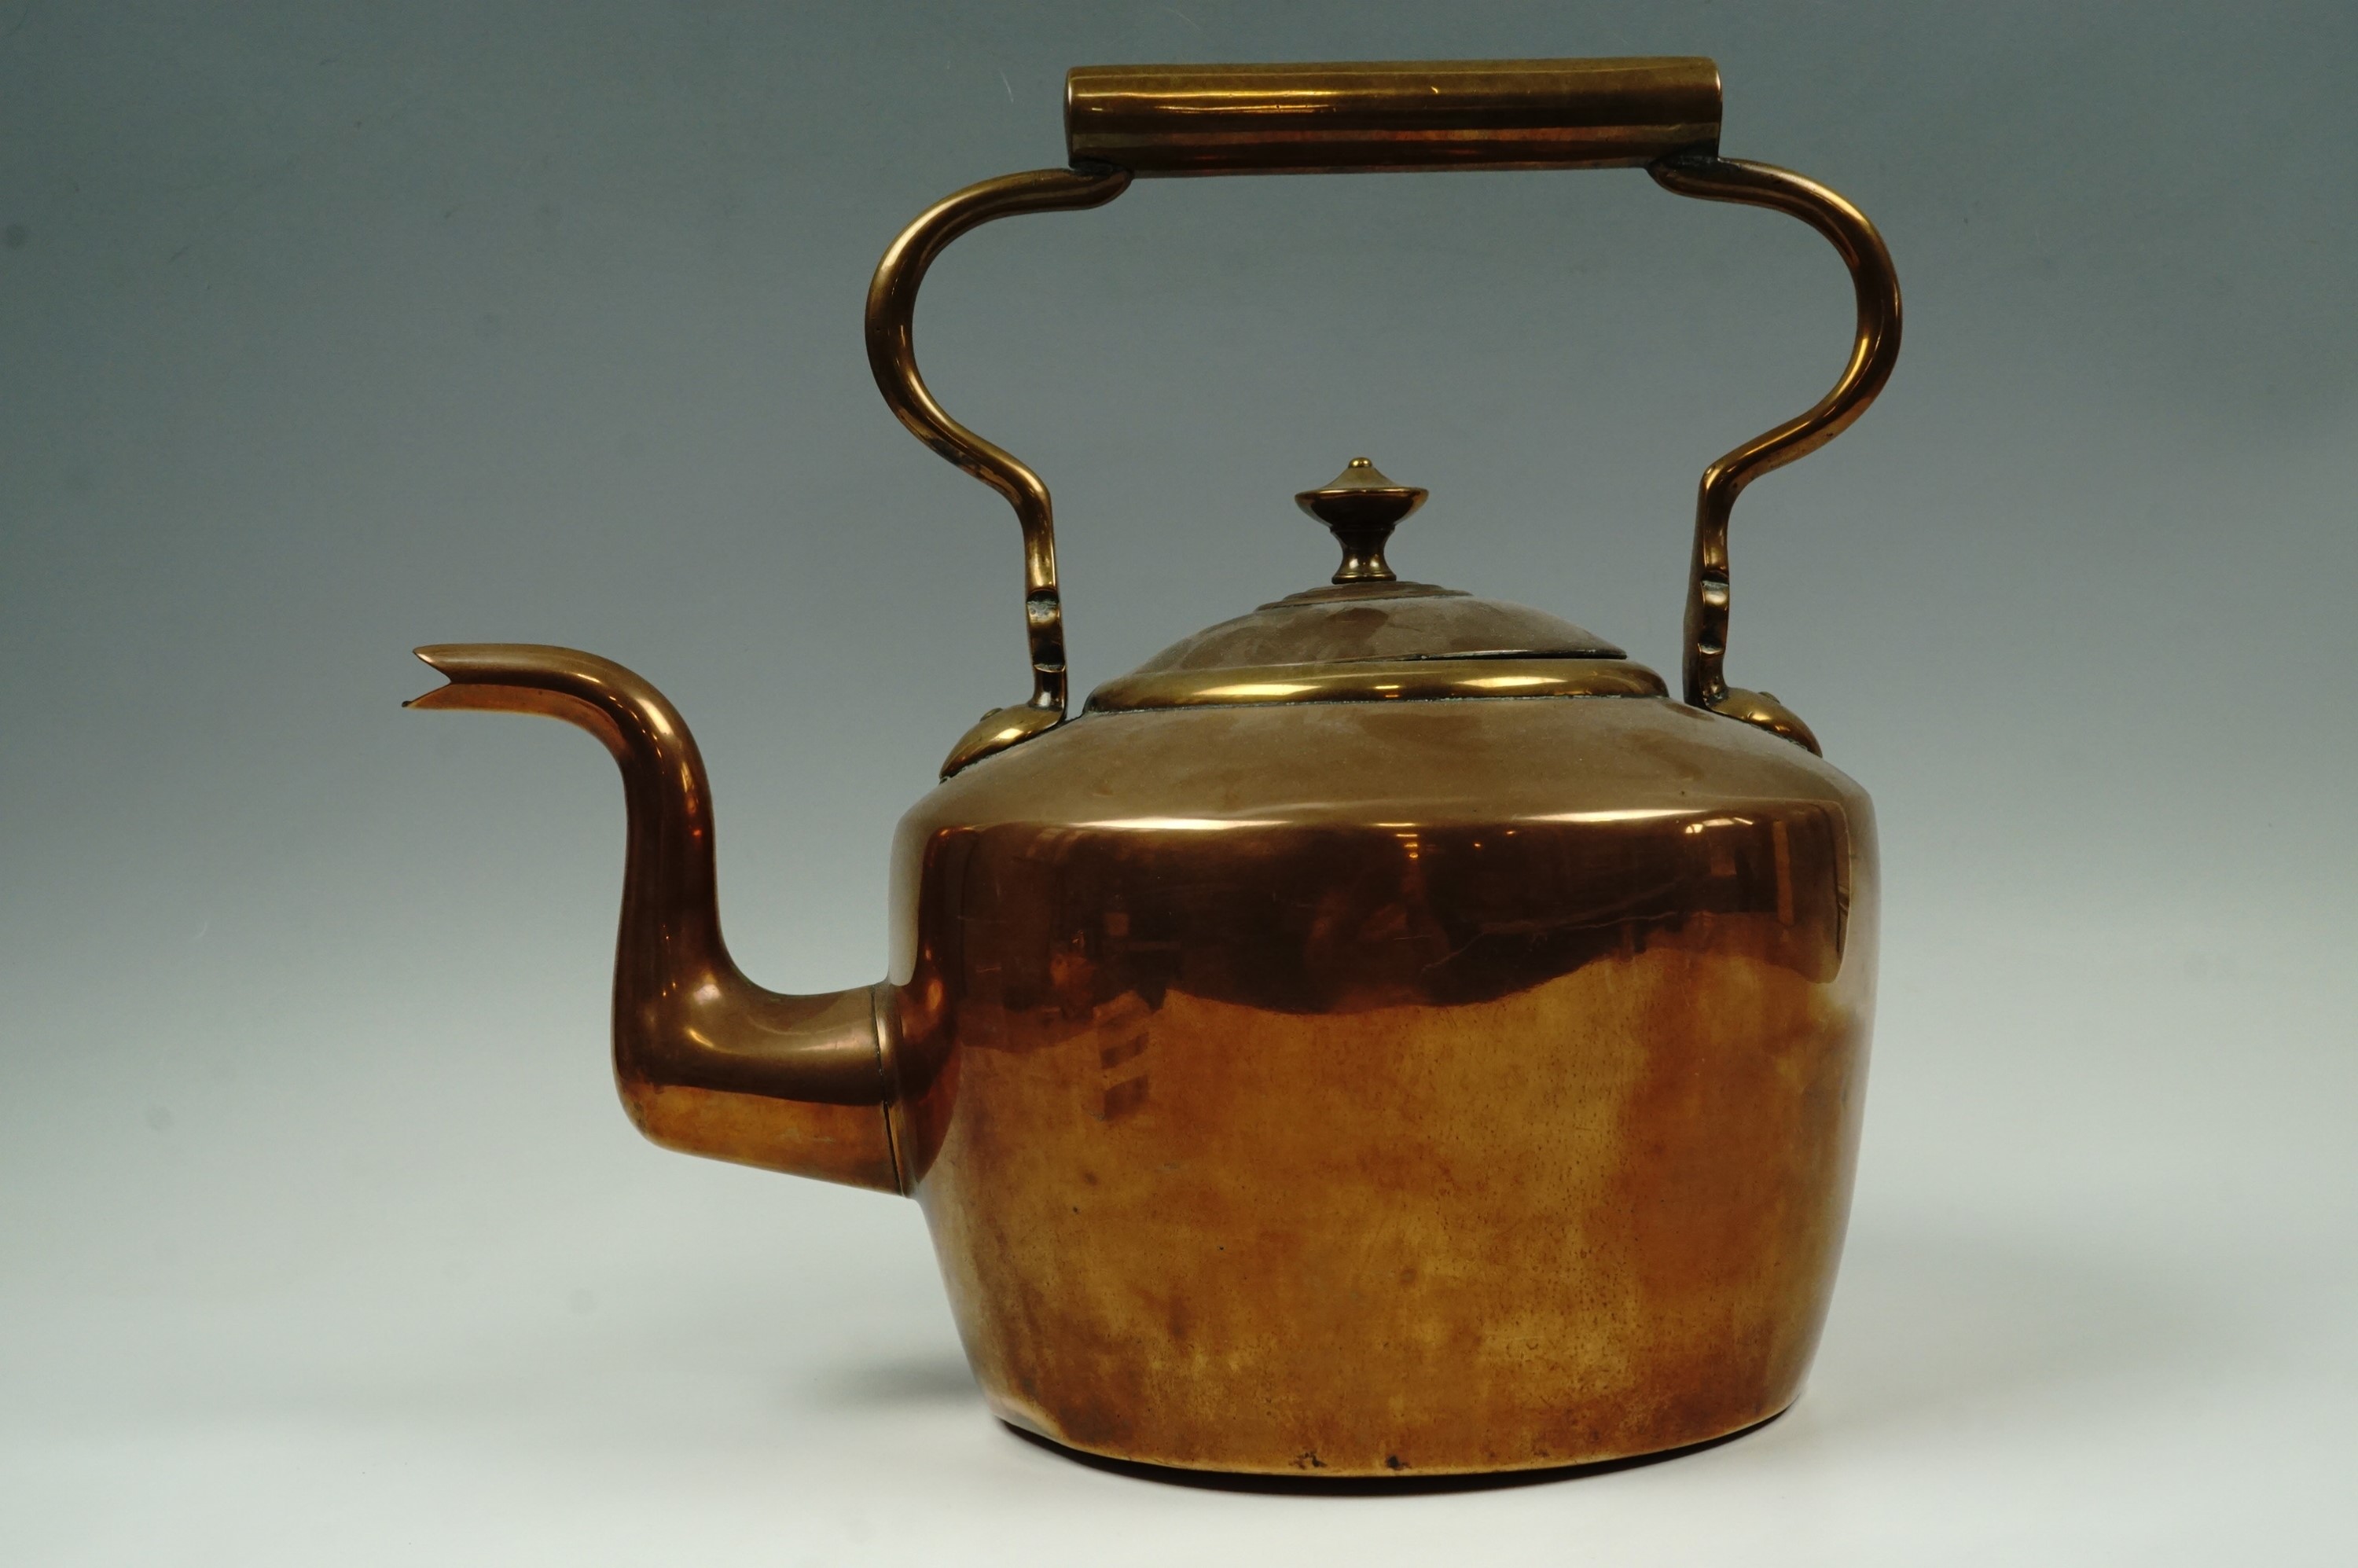 A large Victorian copper kettle, 32 cm